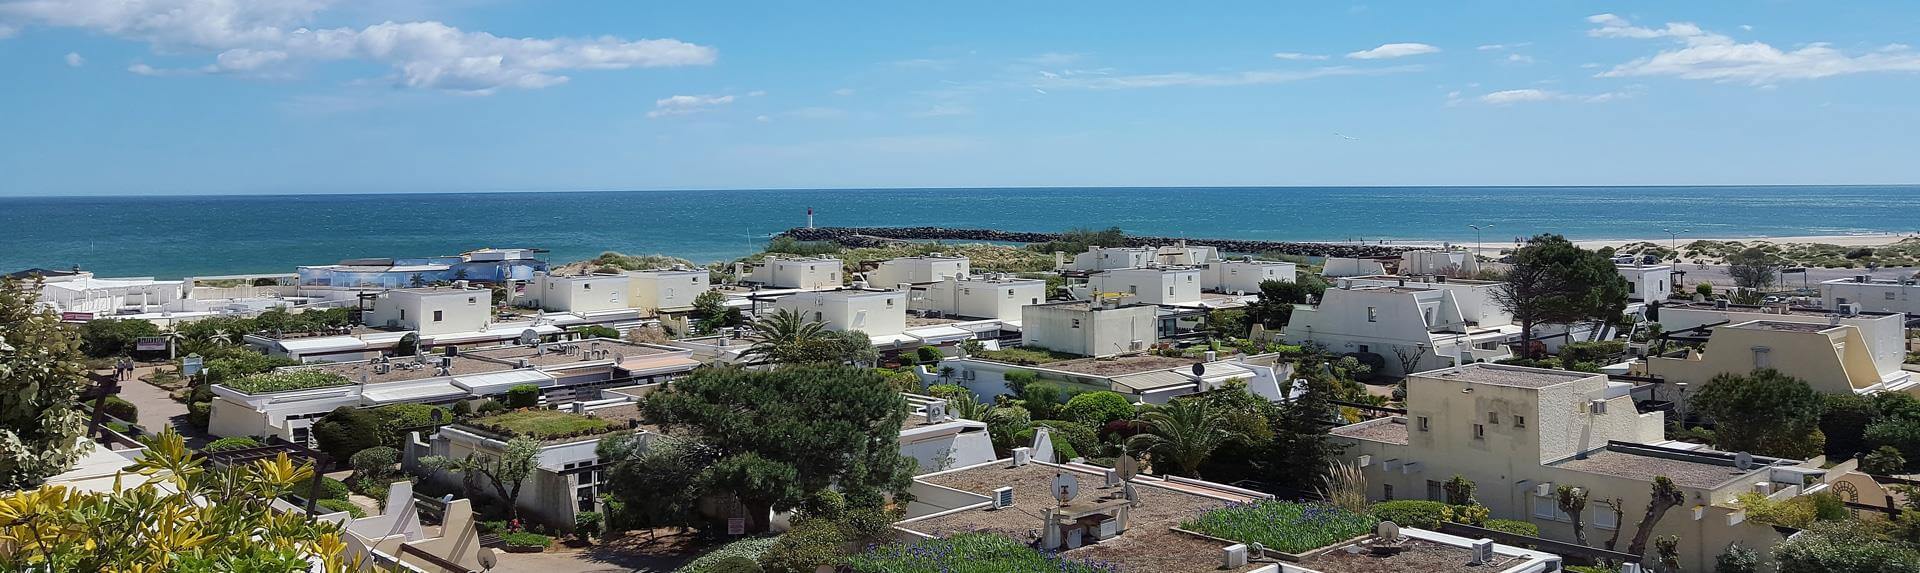 Studios, Apartments uns Duplex mit Seite zum Meer - Residenz Port Nature : FKK-Vermietung in Cap d'Agde